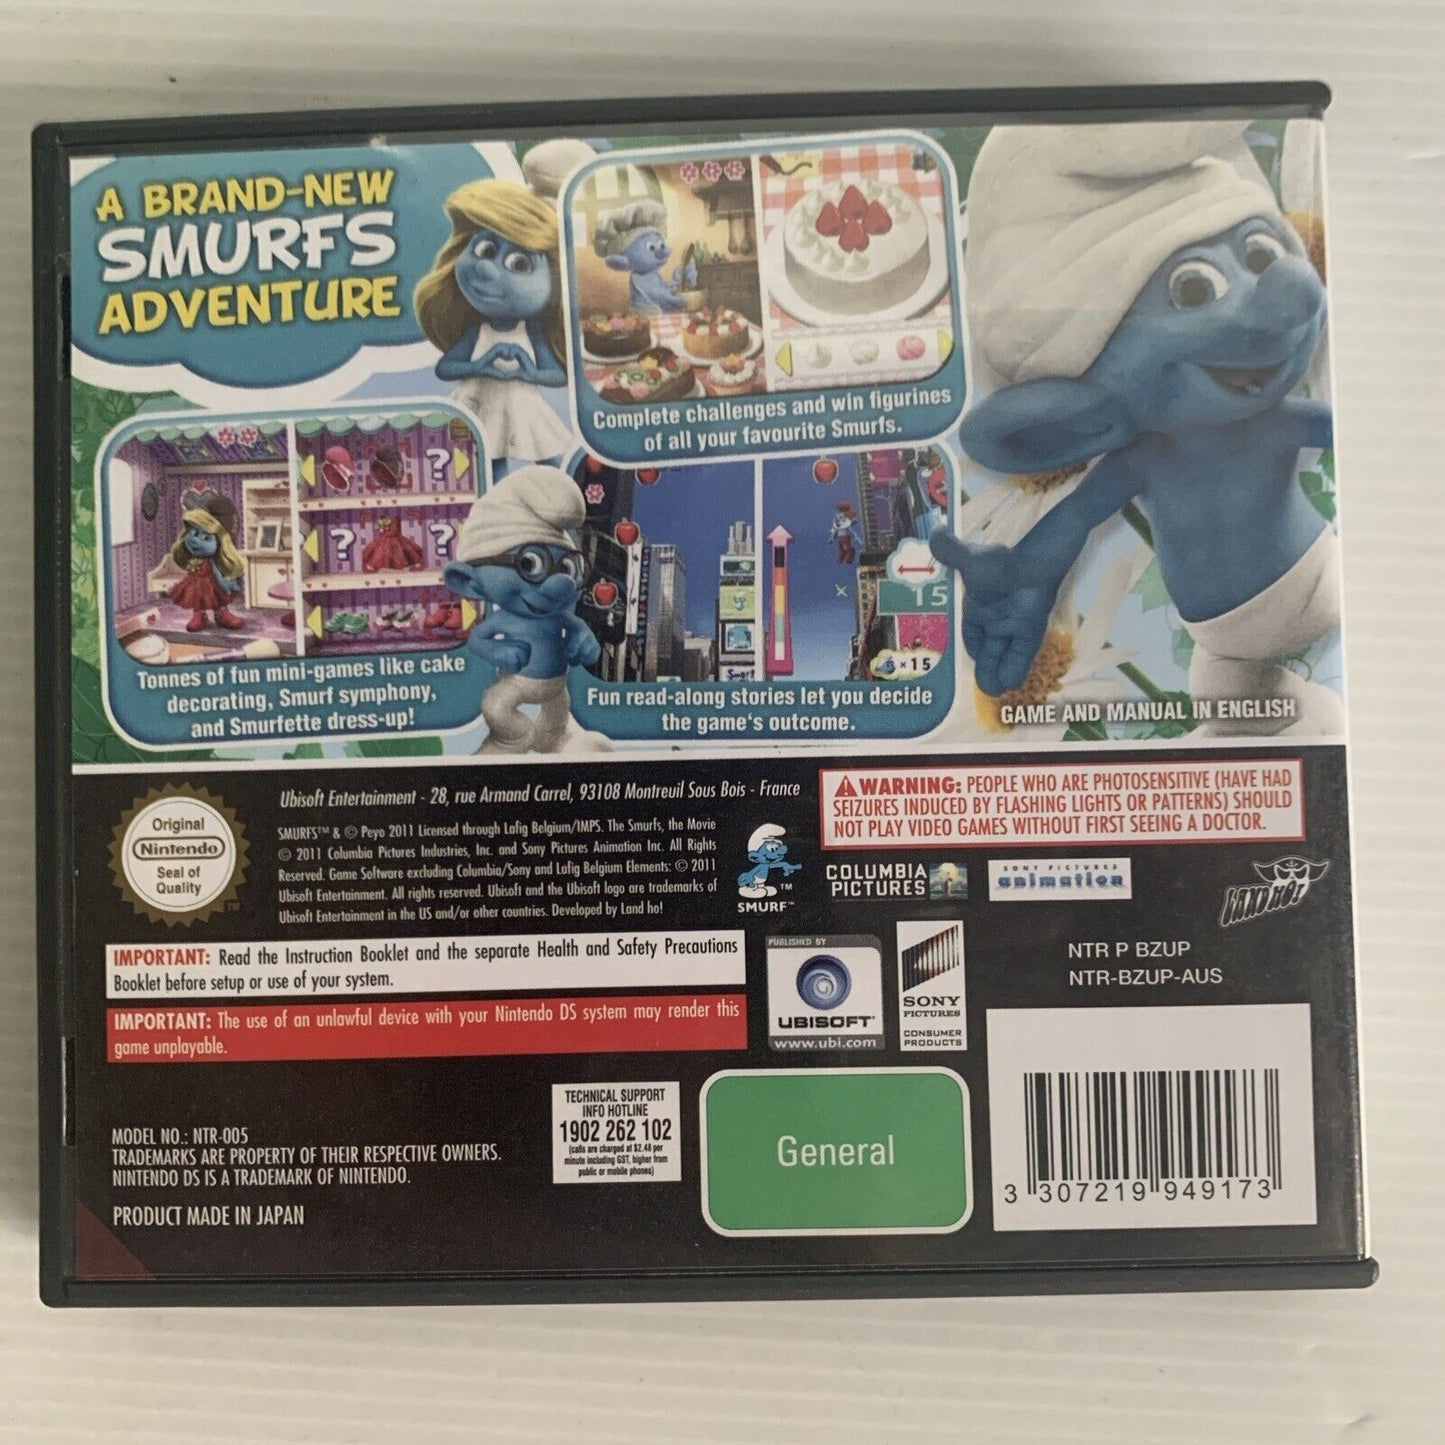 The Smurfs Nintendo DS Game